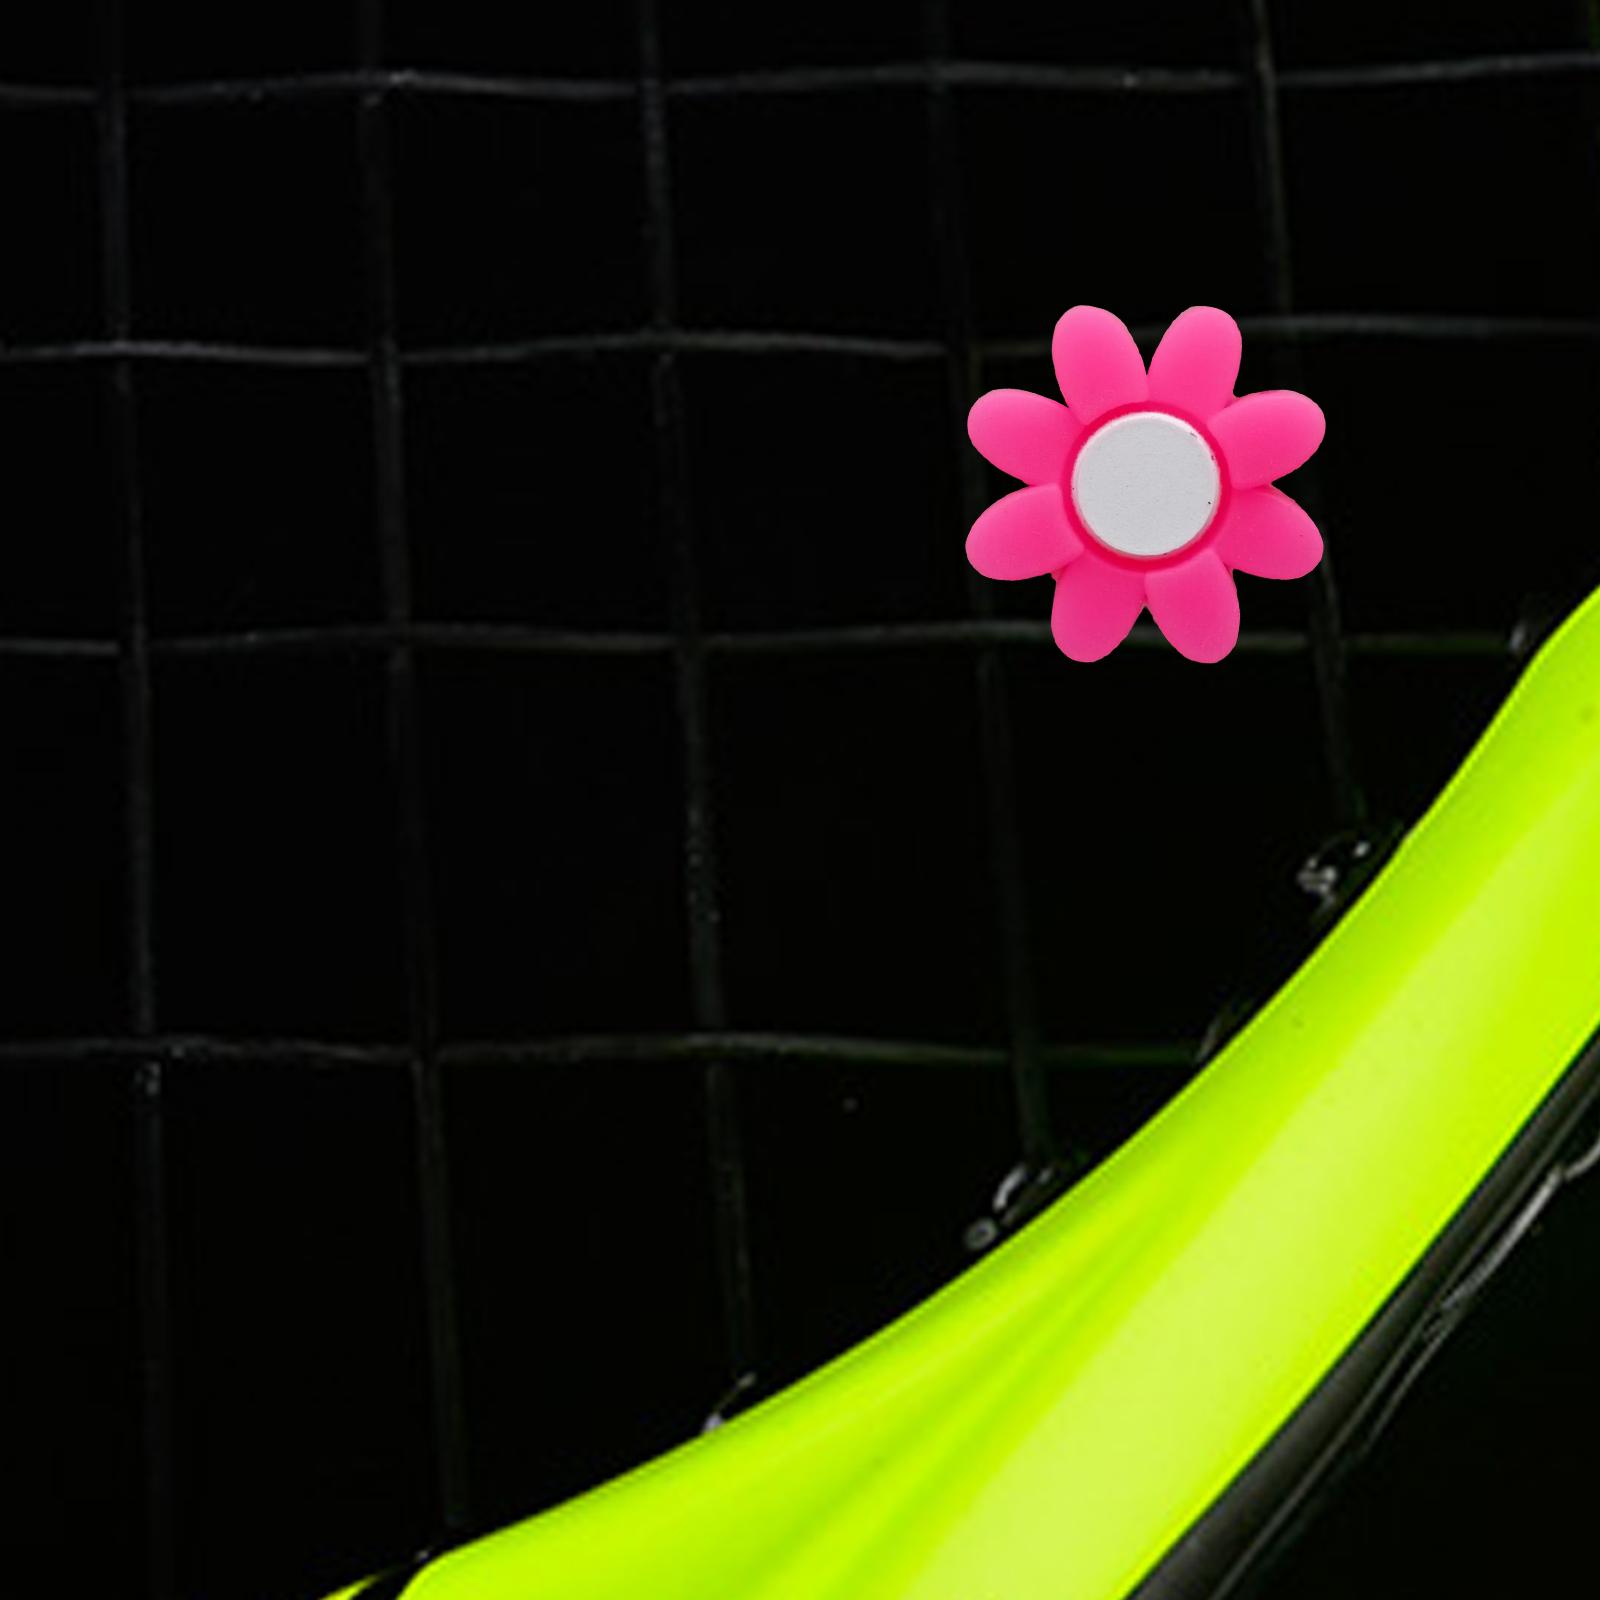 Tennis Racket Vibration Dampener Tennis Racquet Shock Absorber User Friendly Pink